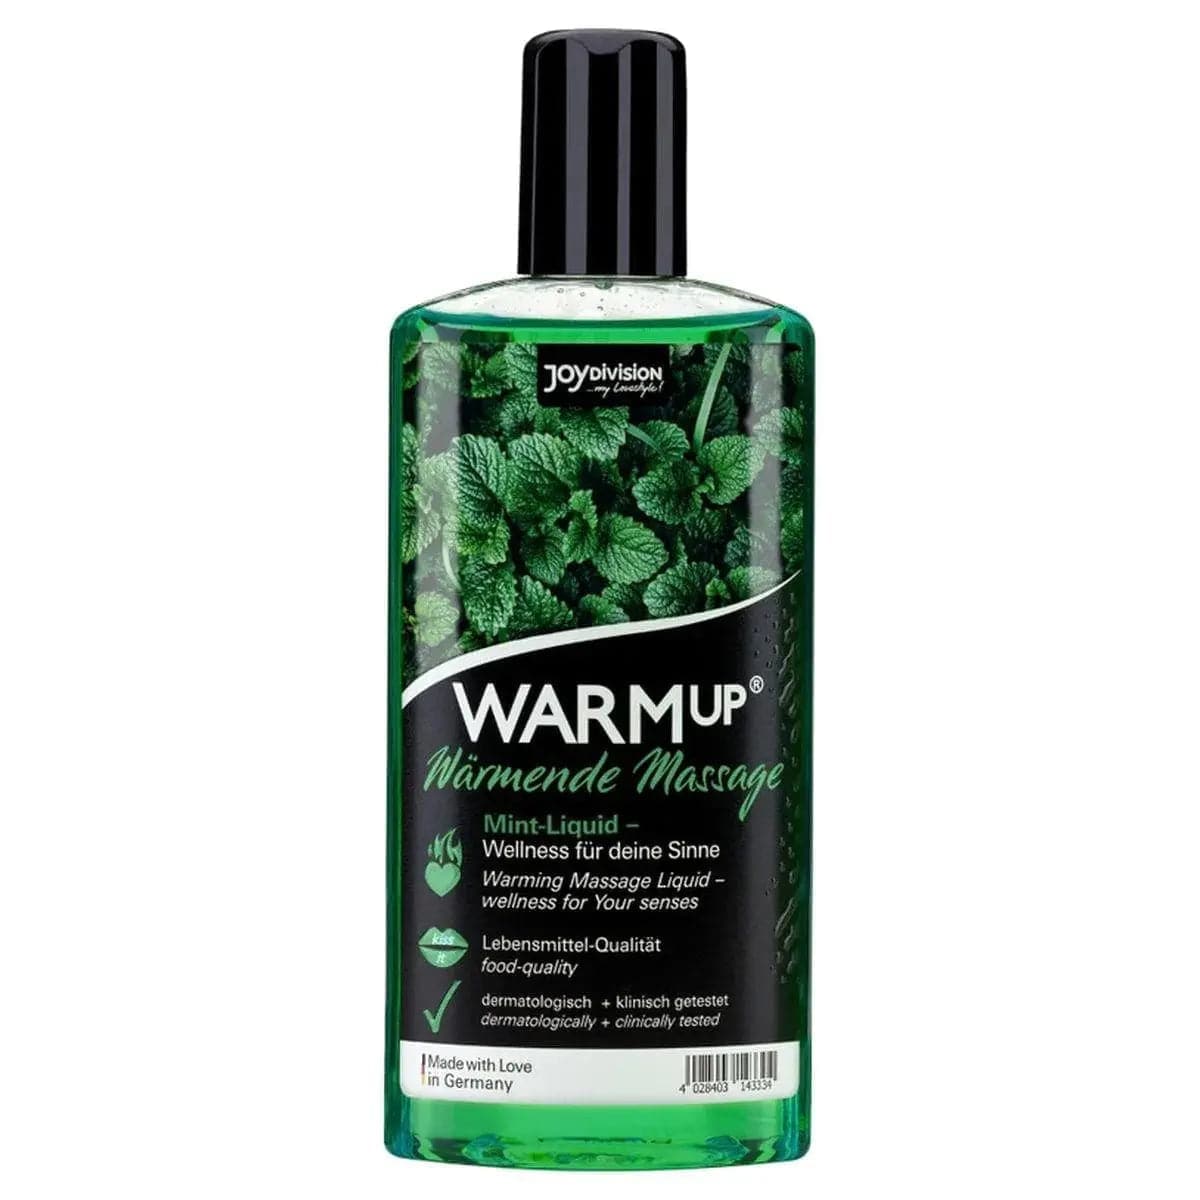 WARMup - Óleo Massagem Comestível Menta 150ml - Aquecimento e Aroma de Fruta - Pérola SexShop